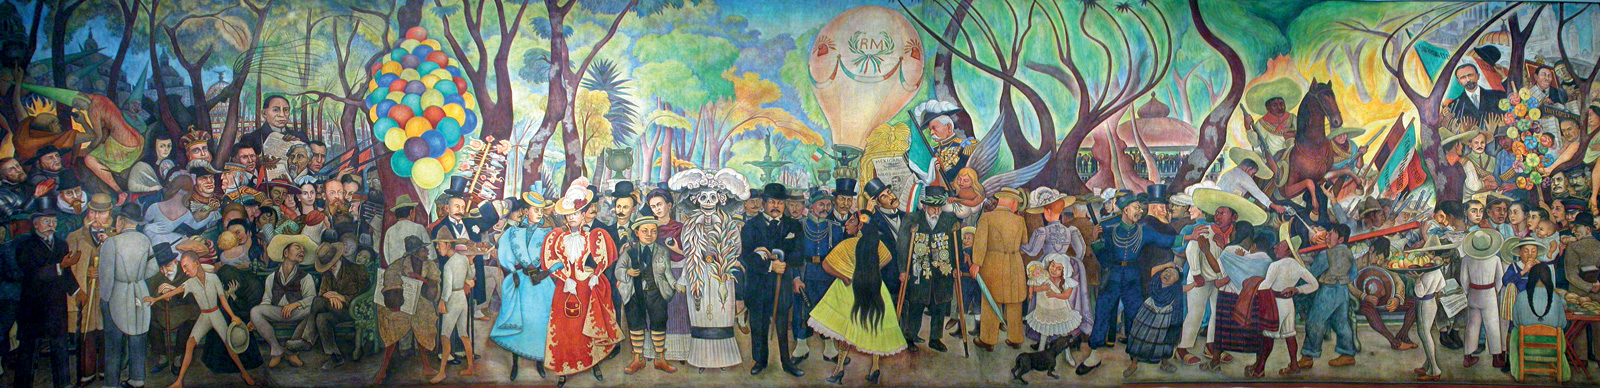 Diego Rivera, *Sueño de una tarde dominical en la Alameda Central*, 1947. Museo Mural Diego Rivera